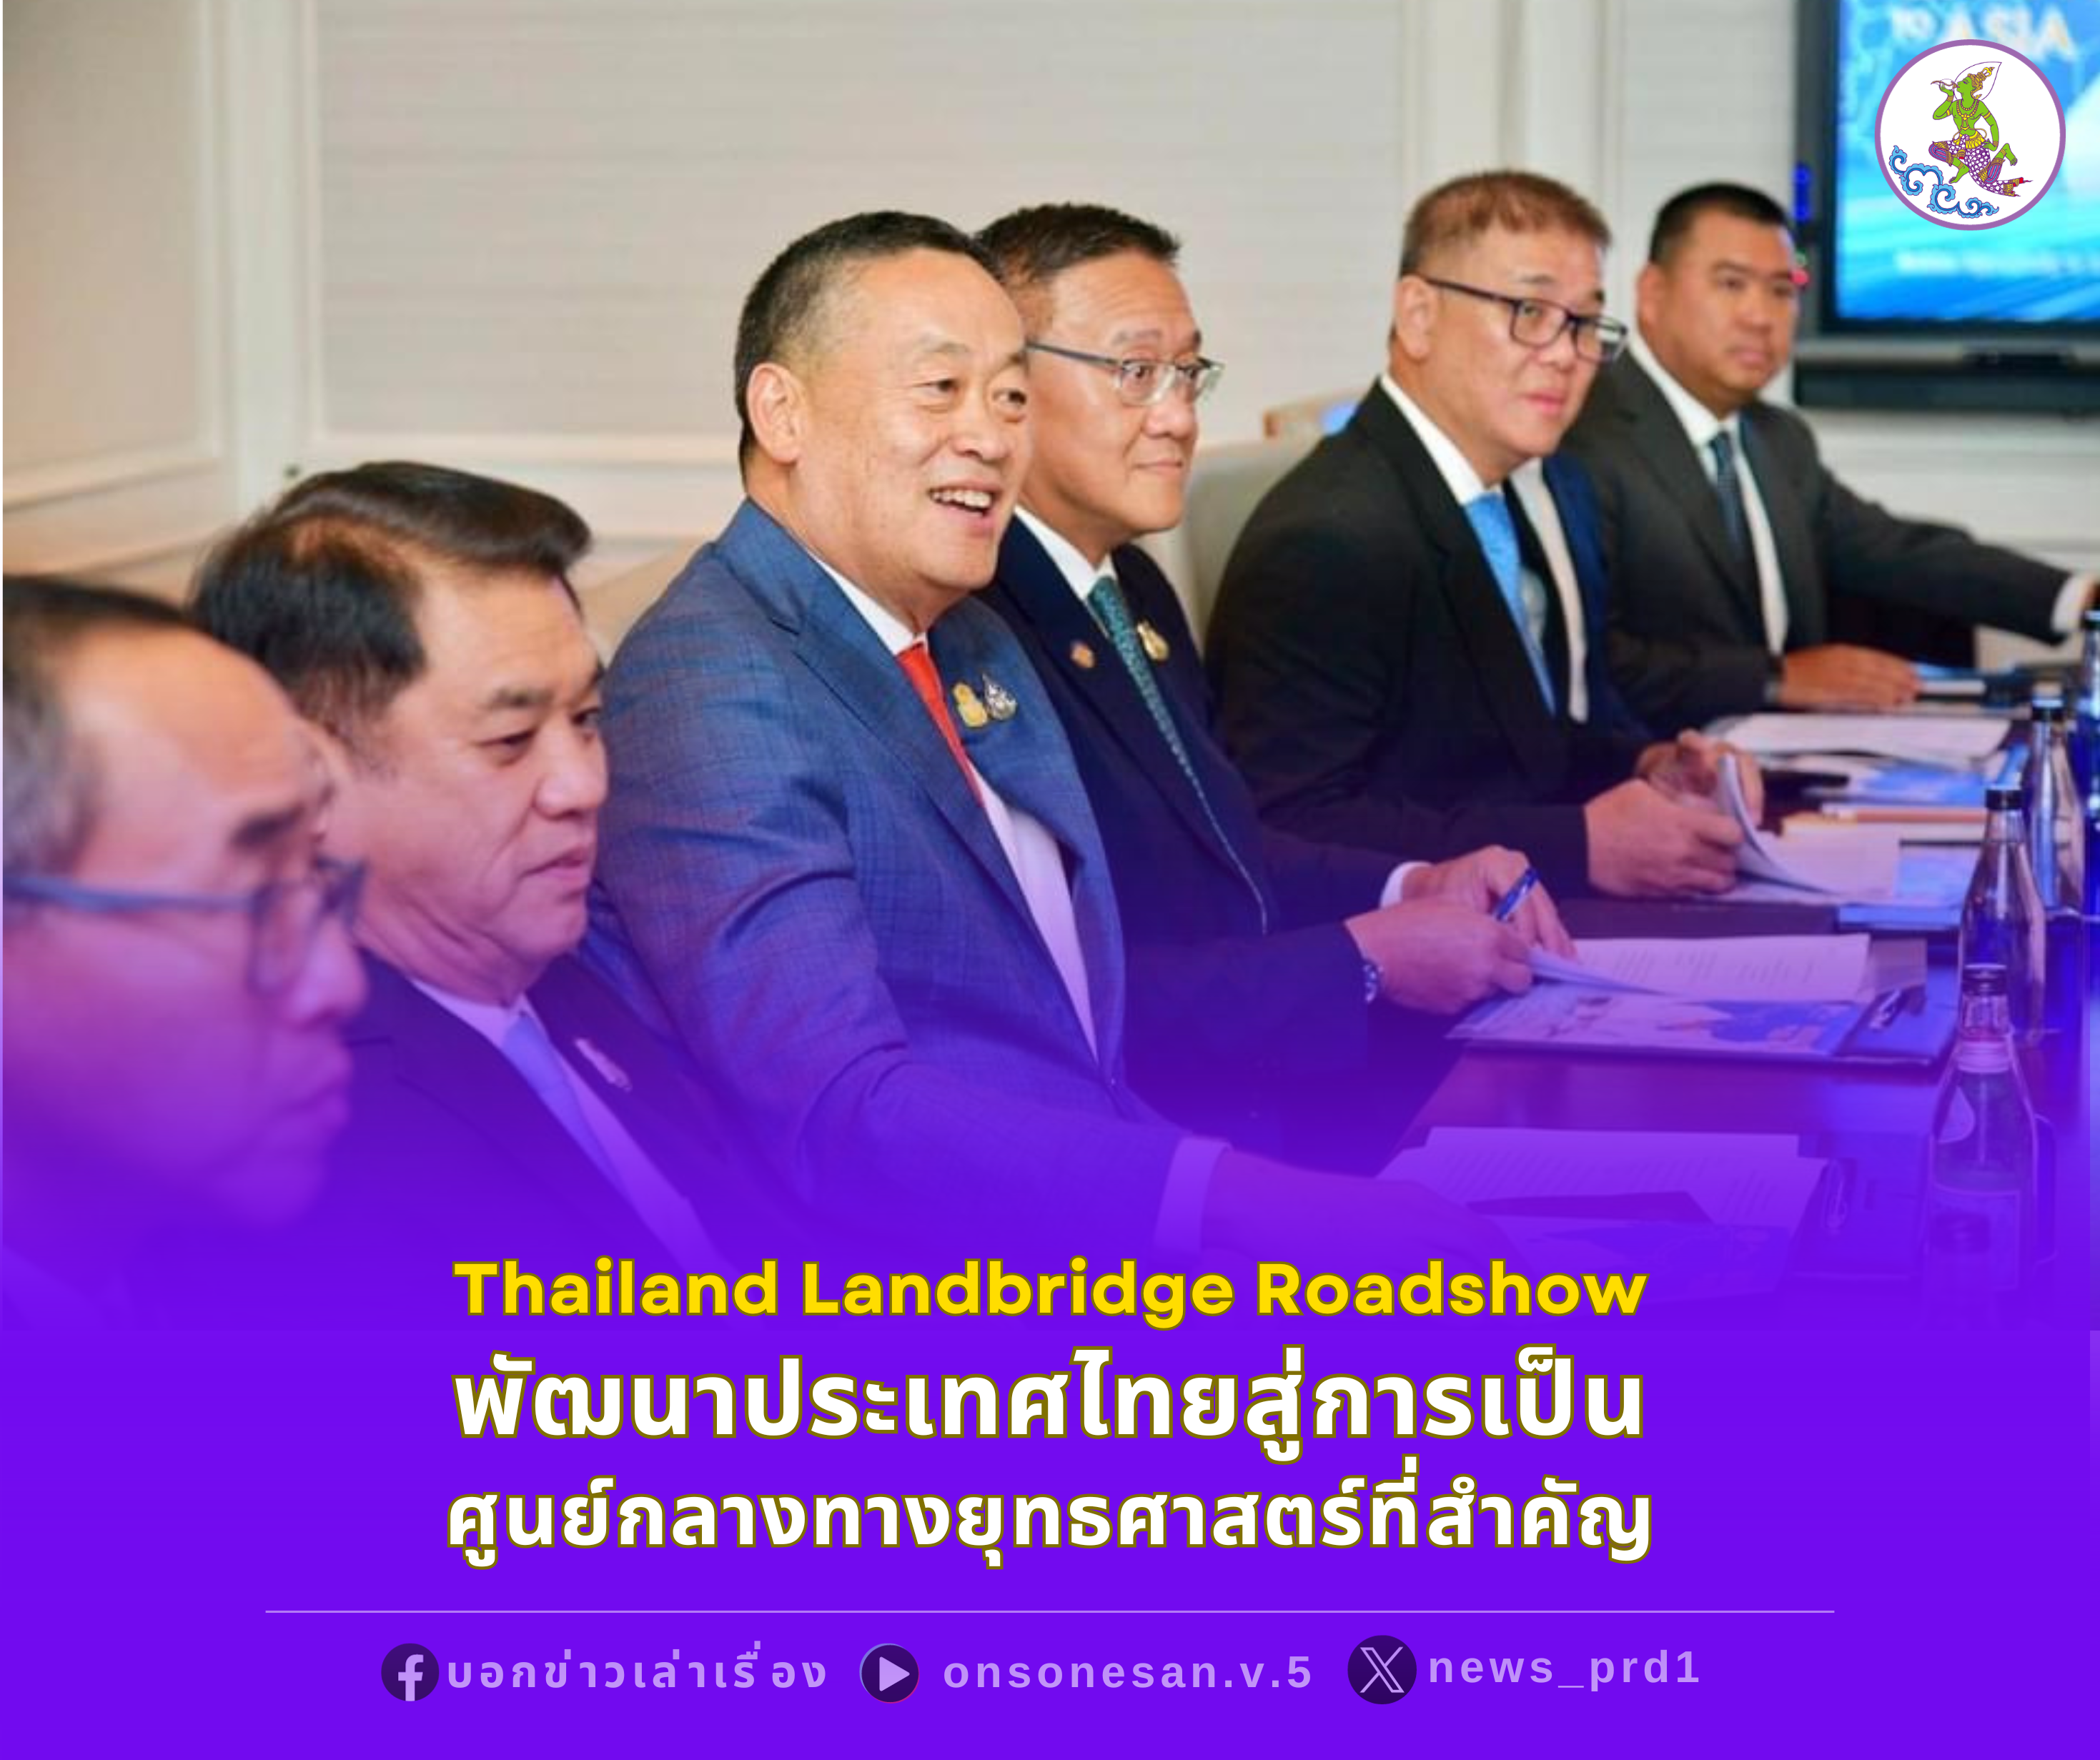 นายกฯ ร่วมงานสัมมนาโครงการ Landbridge พัฒนาประเทศไทยสู่การเป็นศูนย์กลางทางยุทธศาสตร์ที่สำคัญสำหรับการผลิตและการขนส่ง เชิญชวนเอกชนร่วมโครงการประวัติศาสตร์ของไทย รองรับการคมนาคมขนส่ง และเป็นทางเลือกที่ถูกกว่า เร็วกว่า และปลอดภัยกว่า